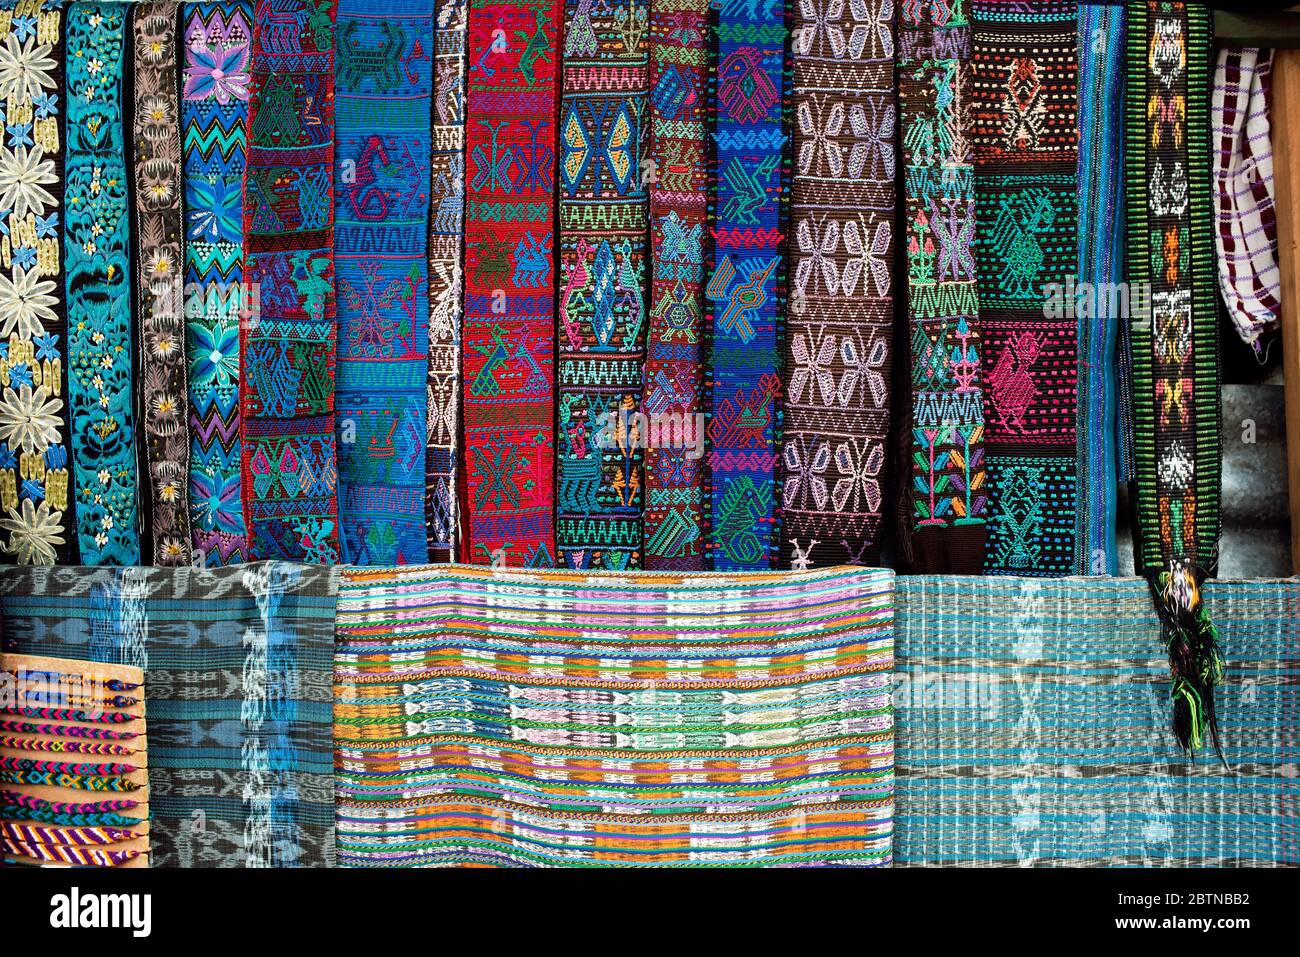 Gürtel (faja) und mehrfarbige handgewebte guatemaltekische Textilien auf  dem Marktstand ausgestellt. Santa Catarina, Atitlán-See, Guatemala  Stockfotografie - Alamy